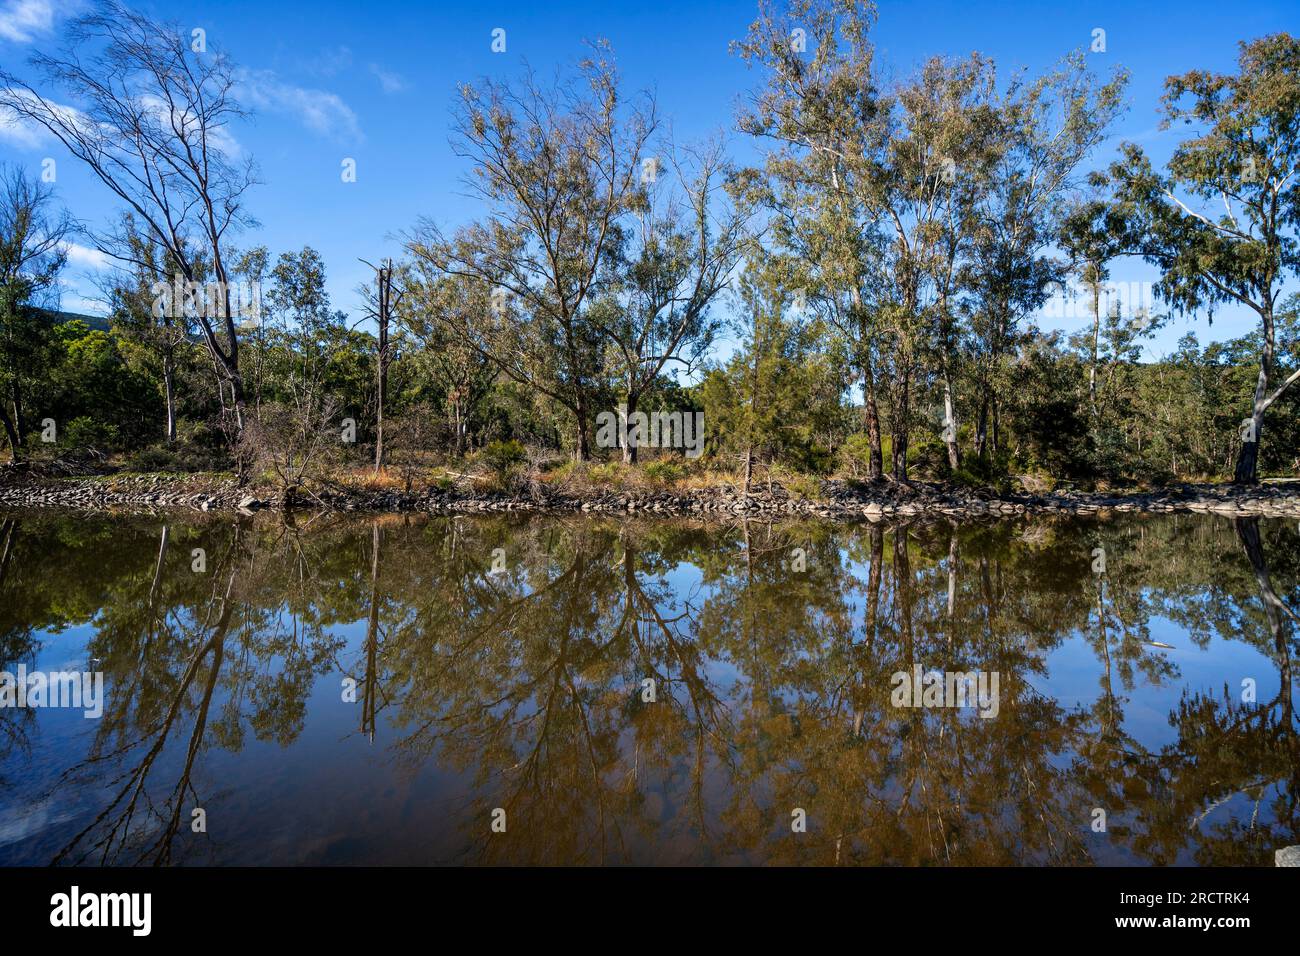 Trou d'eau permanent sur la rivière Severn, section Broadwater du parc national Sundown, Queensland Australie Banque D'Images